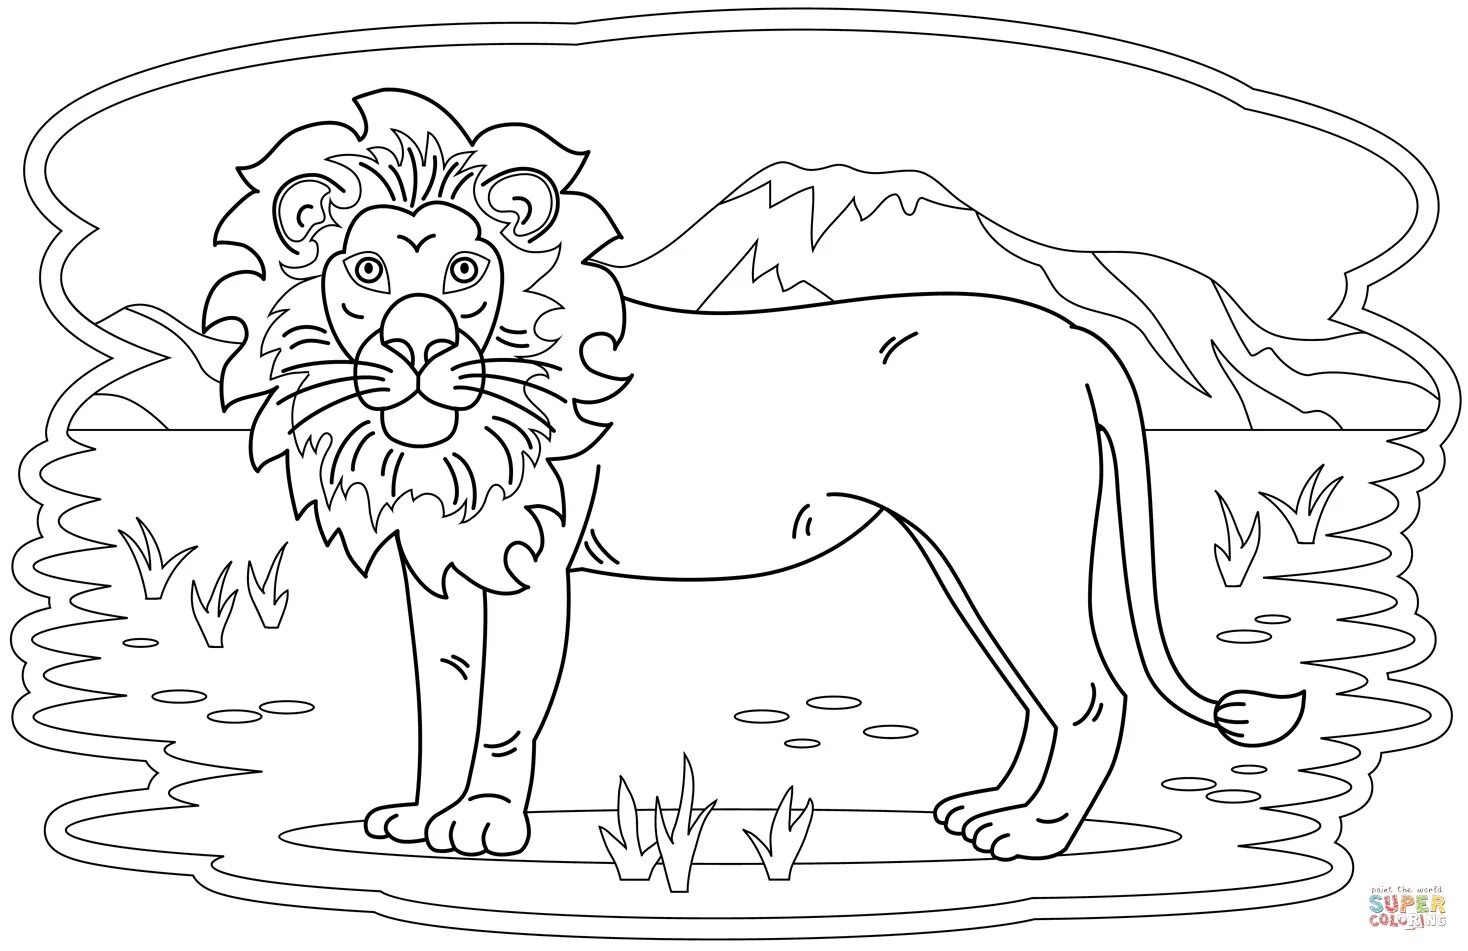 Забавная раскраска льва для детей 3-4 лет